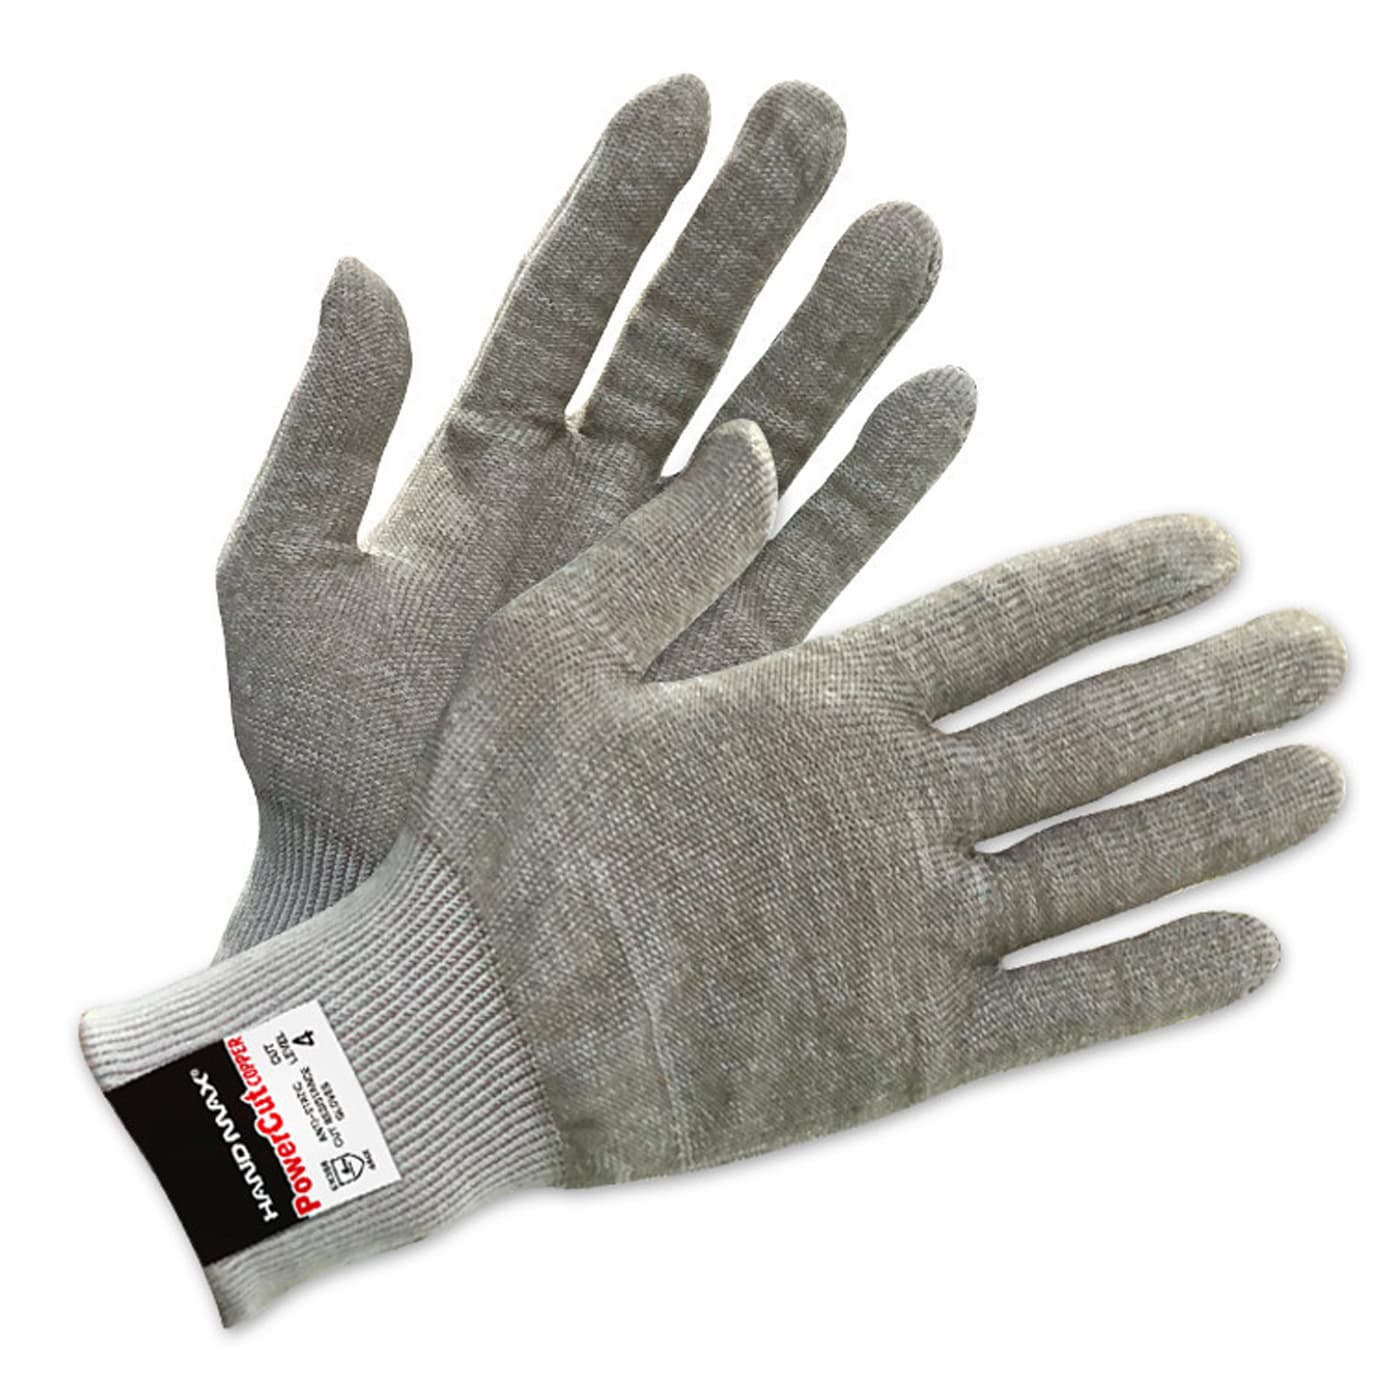 Power Cut Copper Semiconductive Cut 4 Gloves